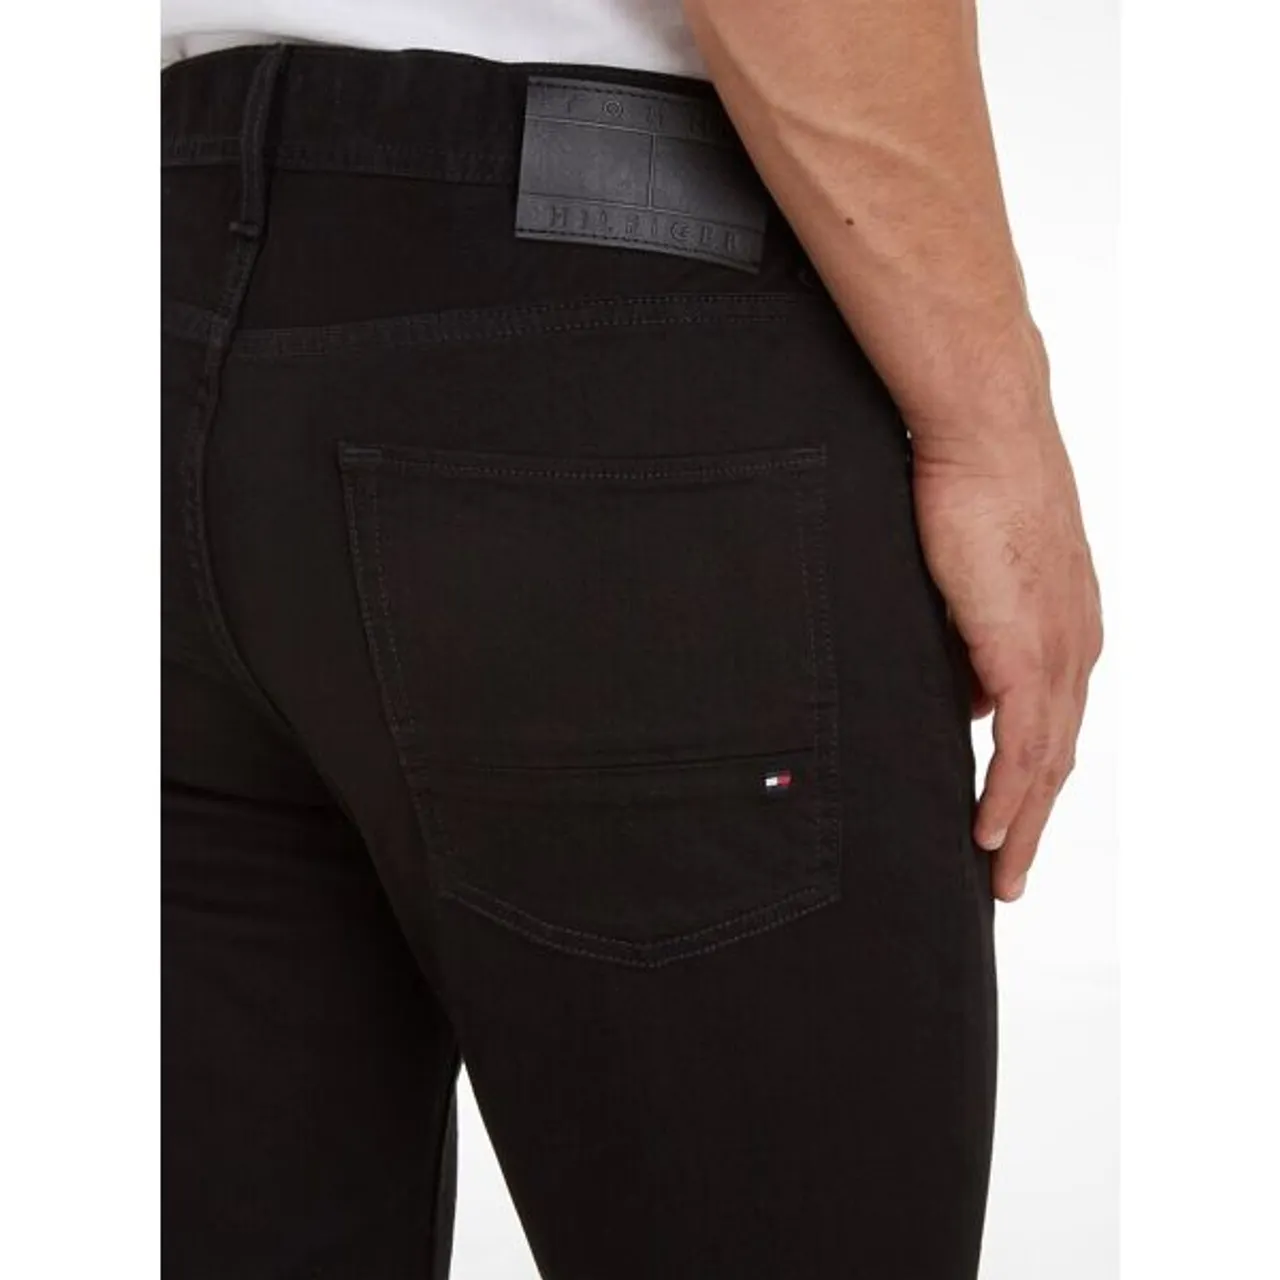 Straight-Jeans TOMMY HILFIGER "Denton" Gr. 30, Länge 36, schwarz (detroit black) Herren Jeans Straight Fit